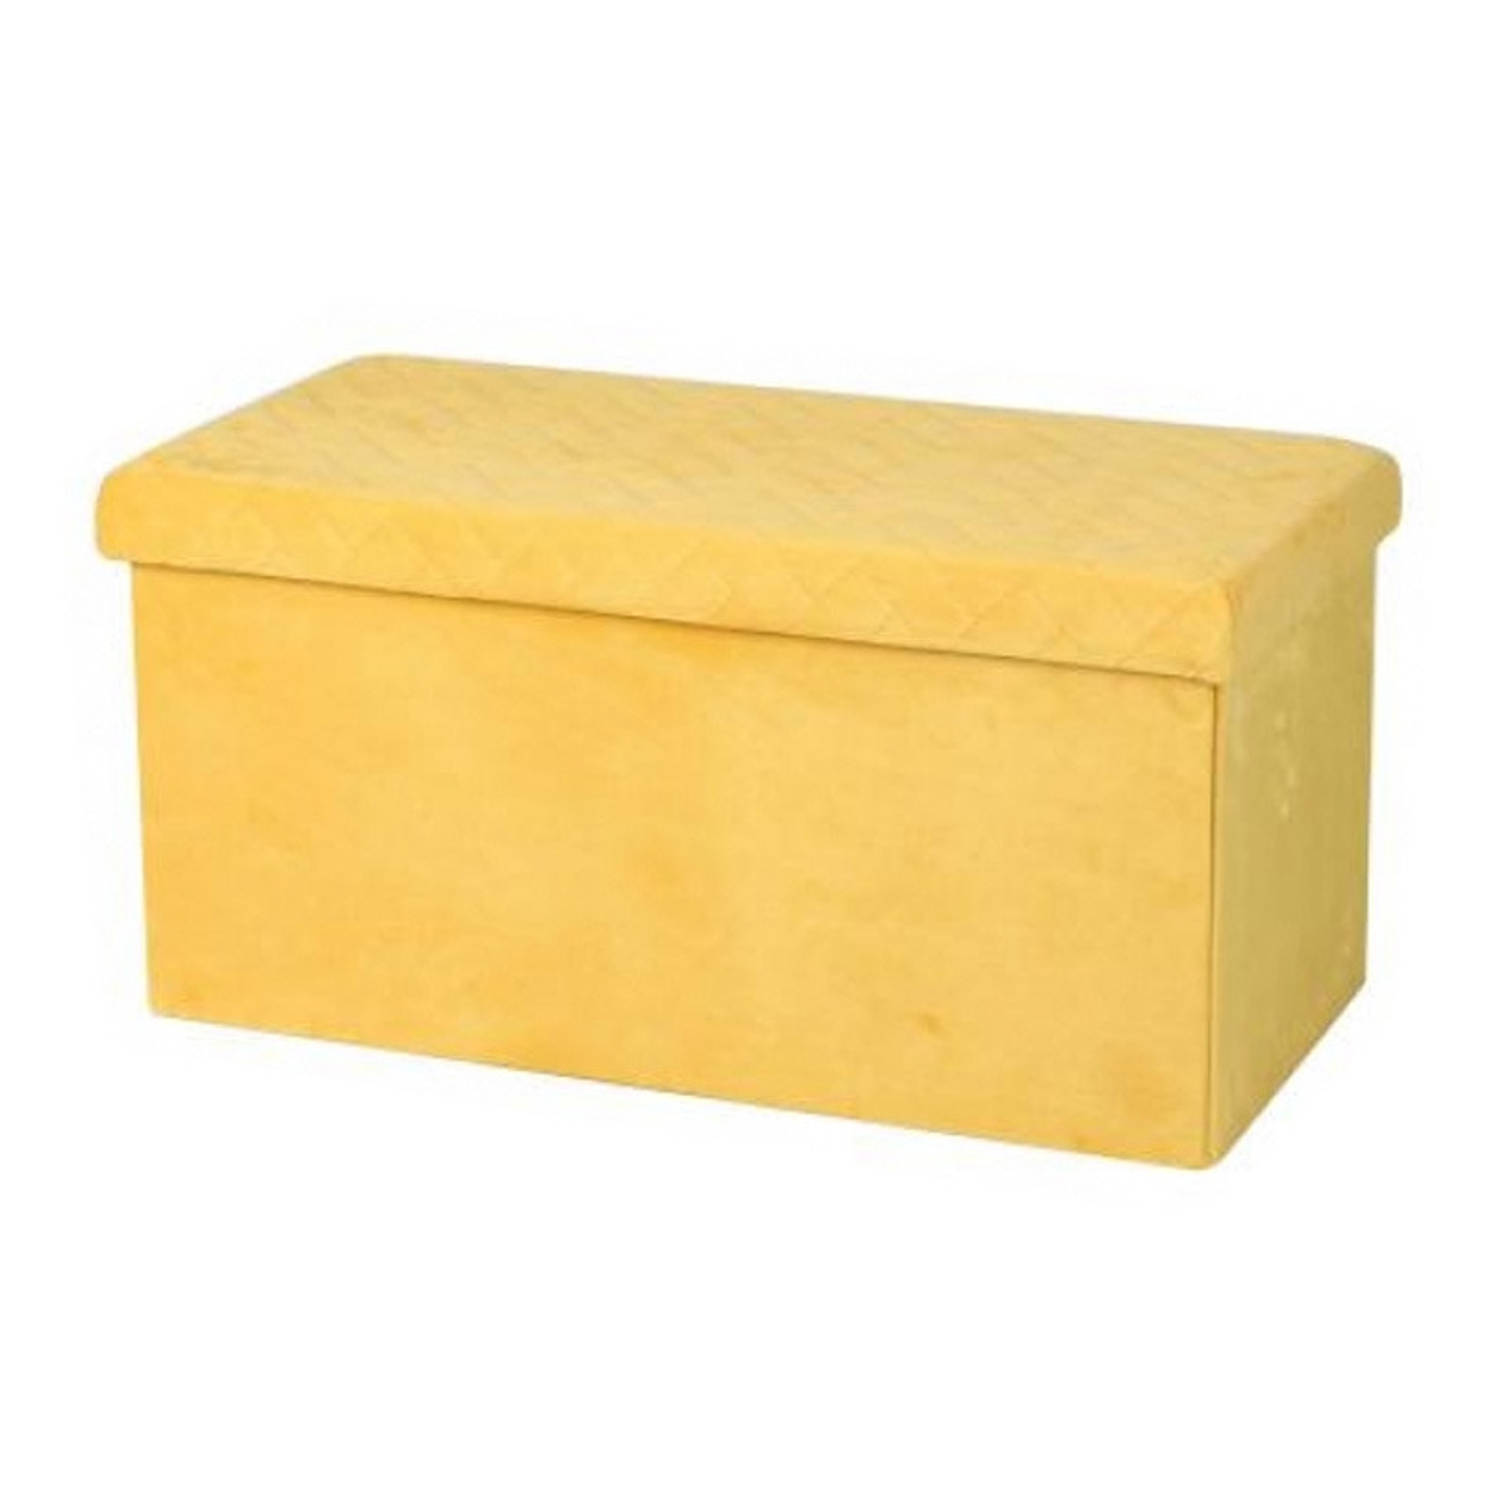 Hocker bank poef XXL opbergbox geel polyester-mdf 76 x 38 x 38 cm Poefs